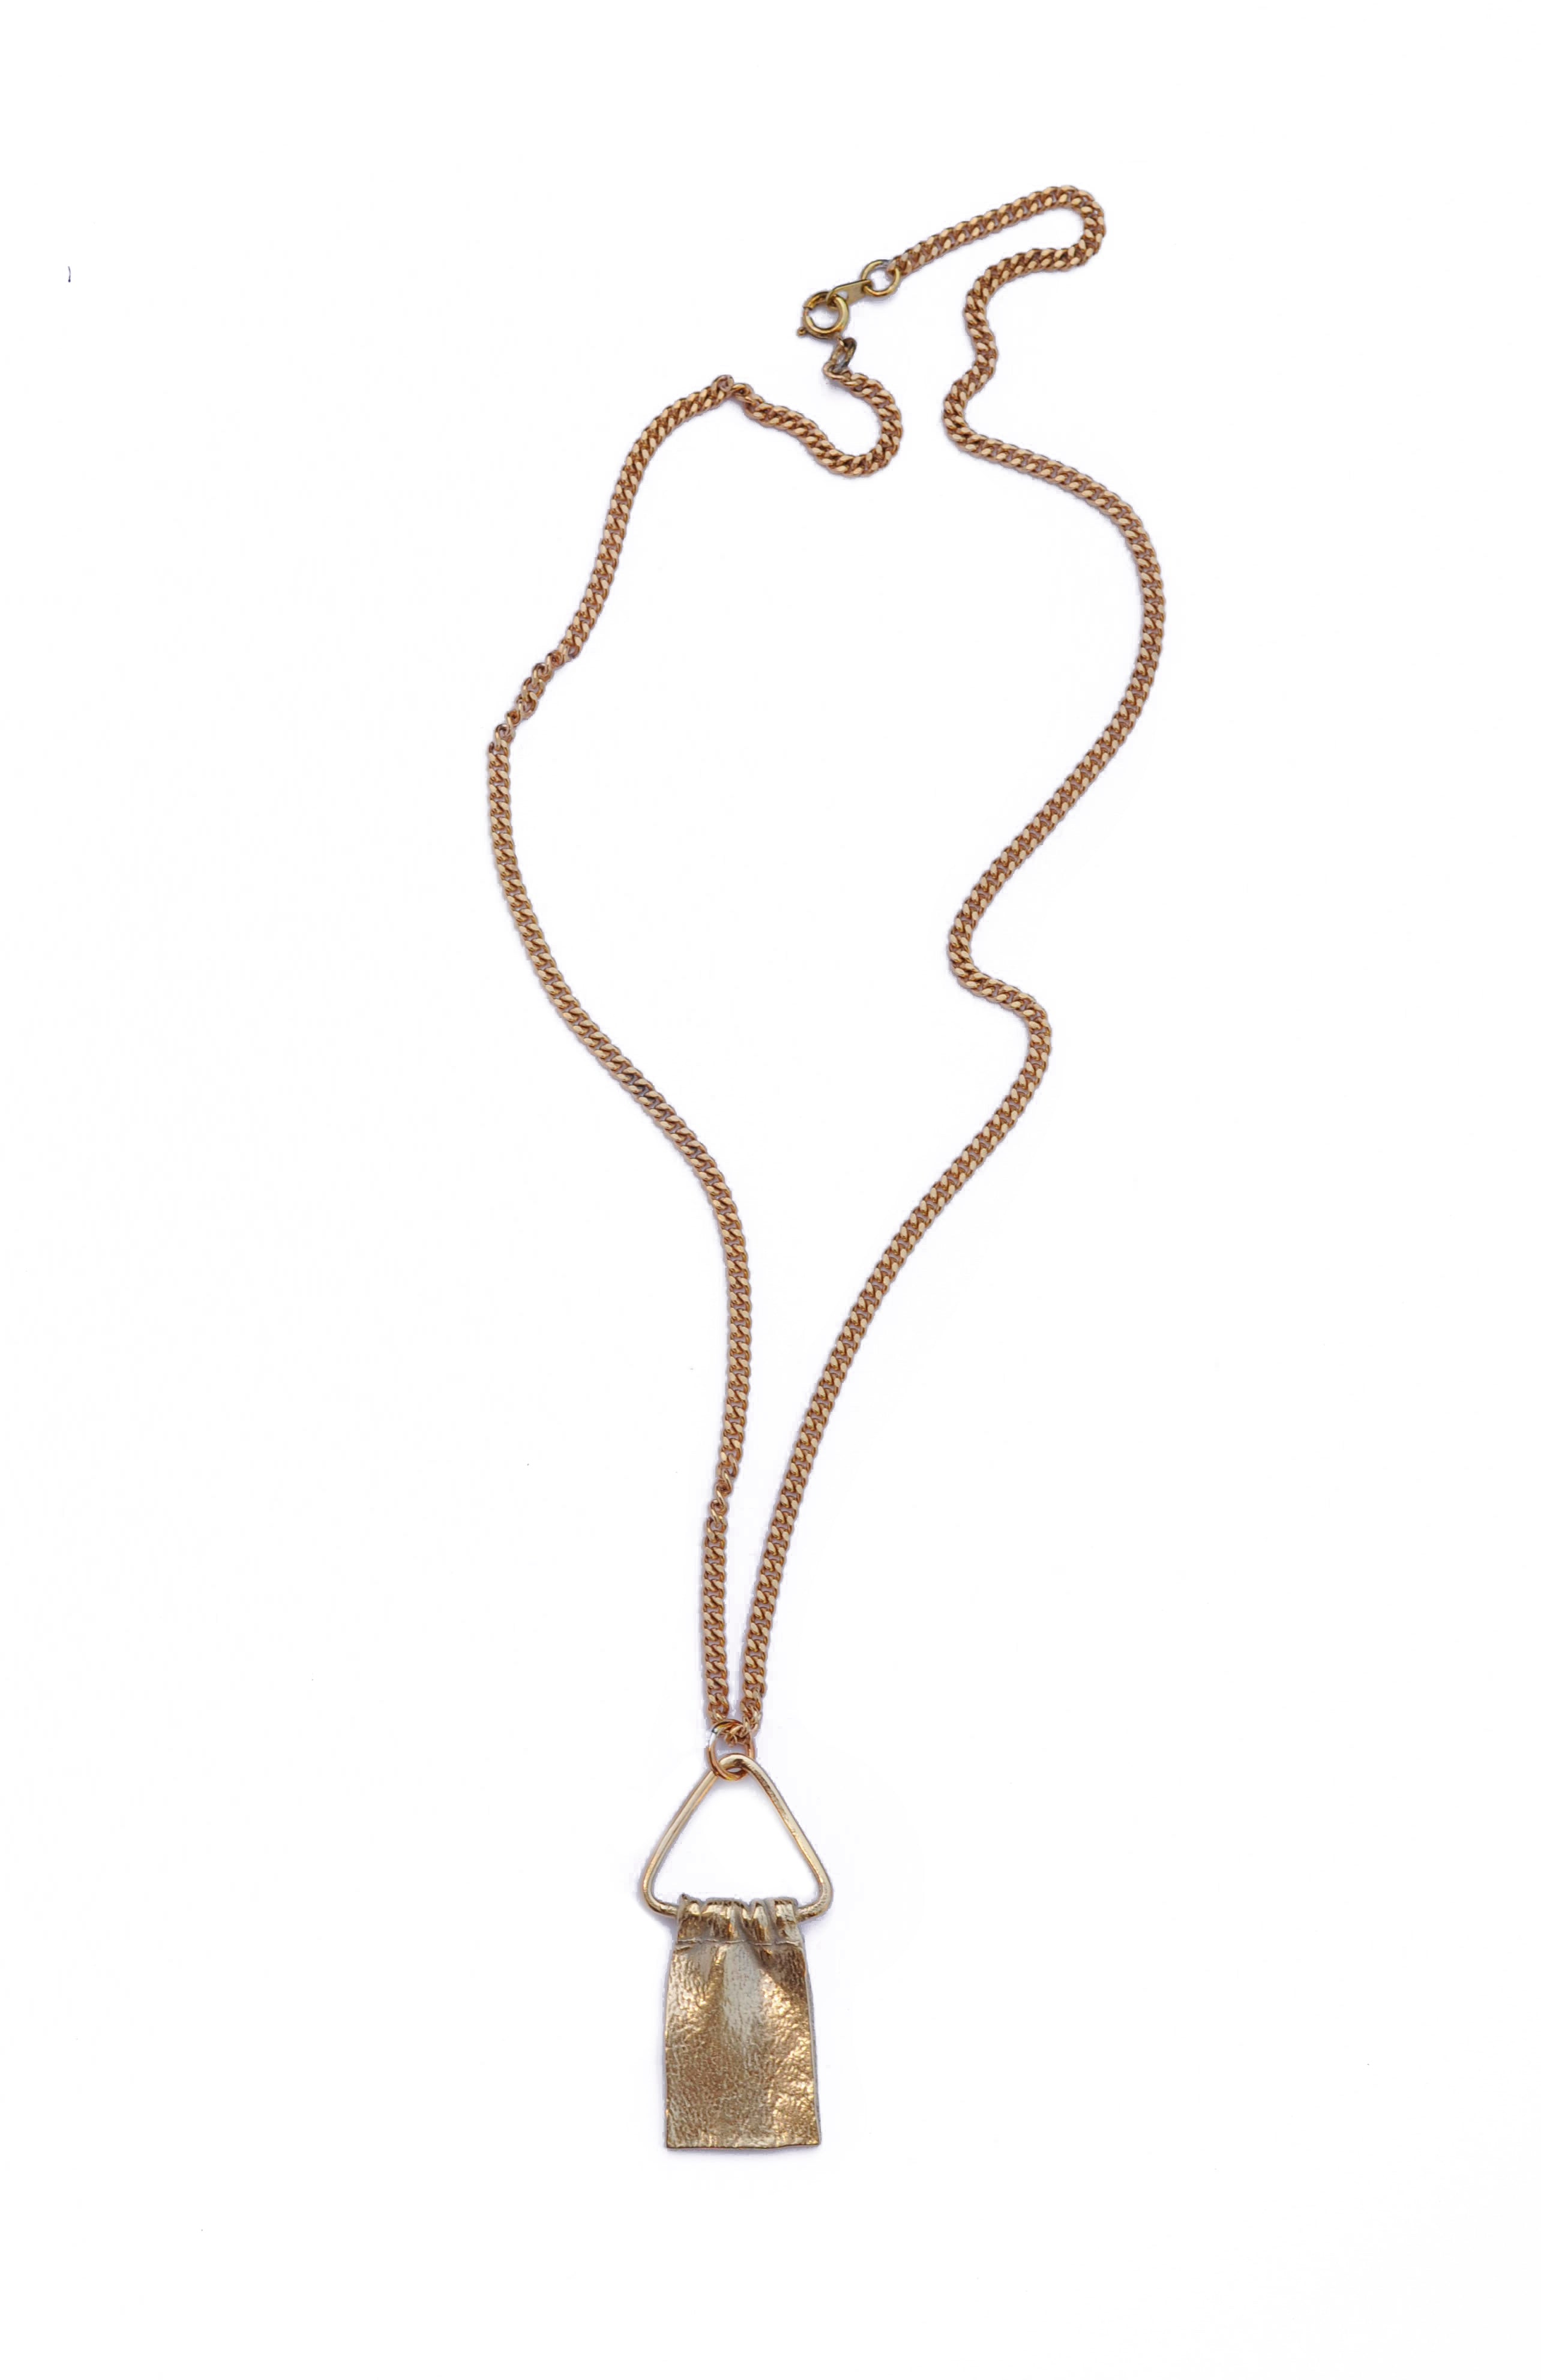 SALE - TRIANGLE DRAPE necklace